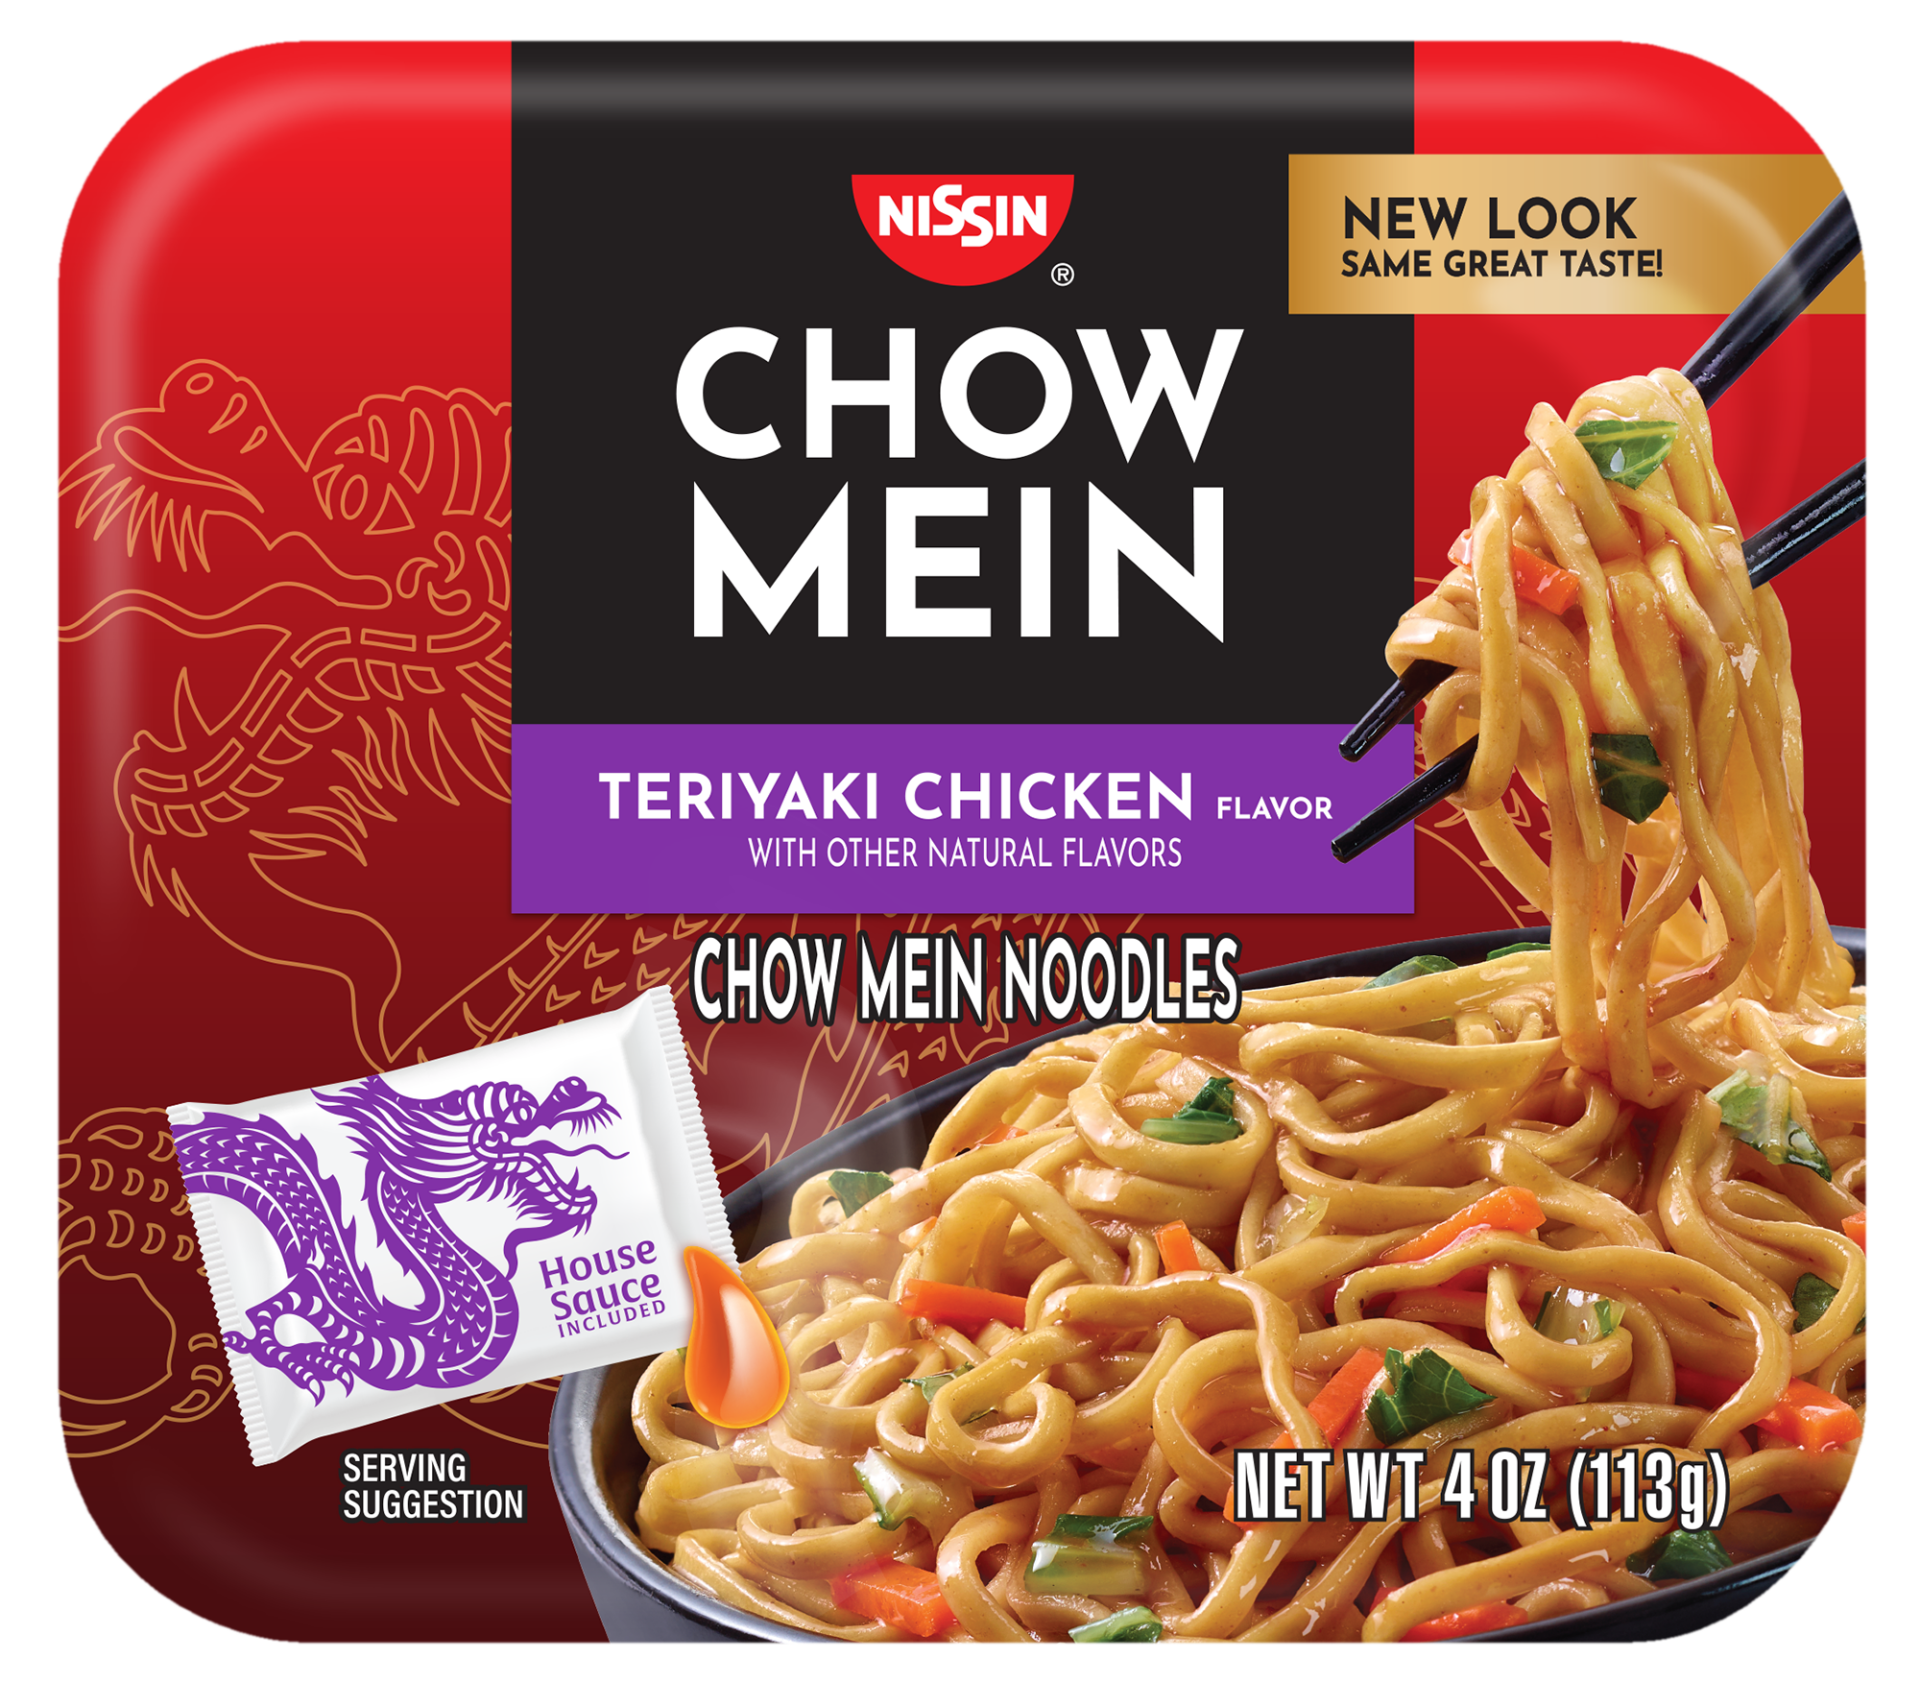 Chow Mein Teriyaki Chicken